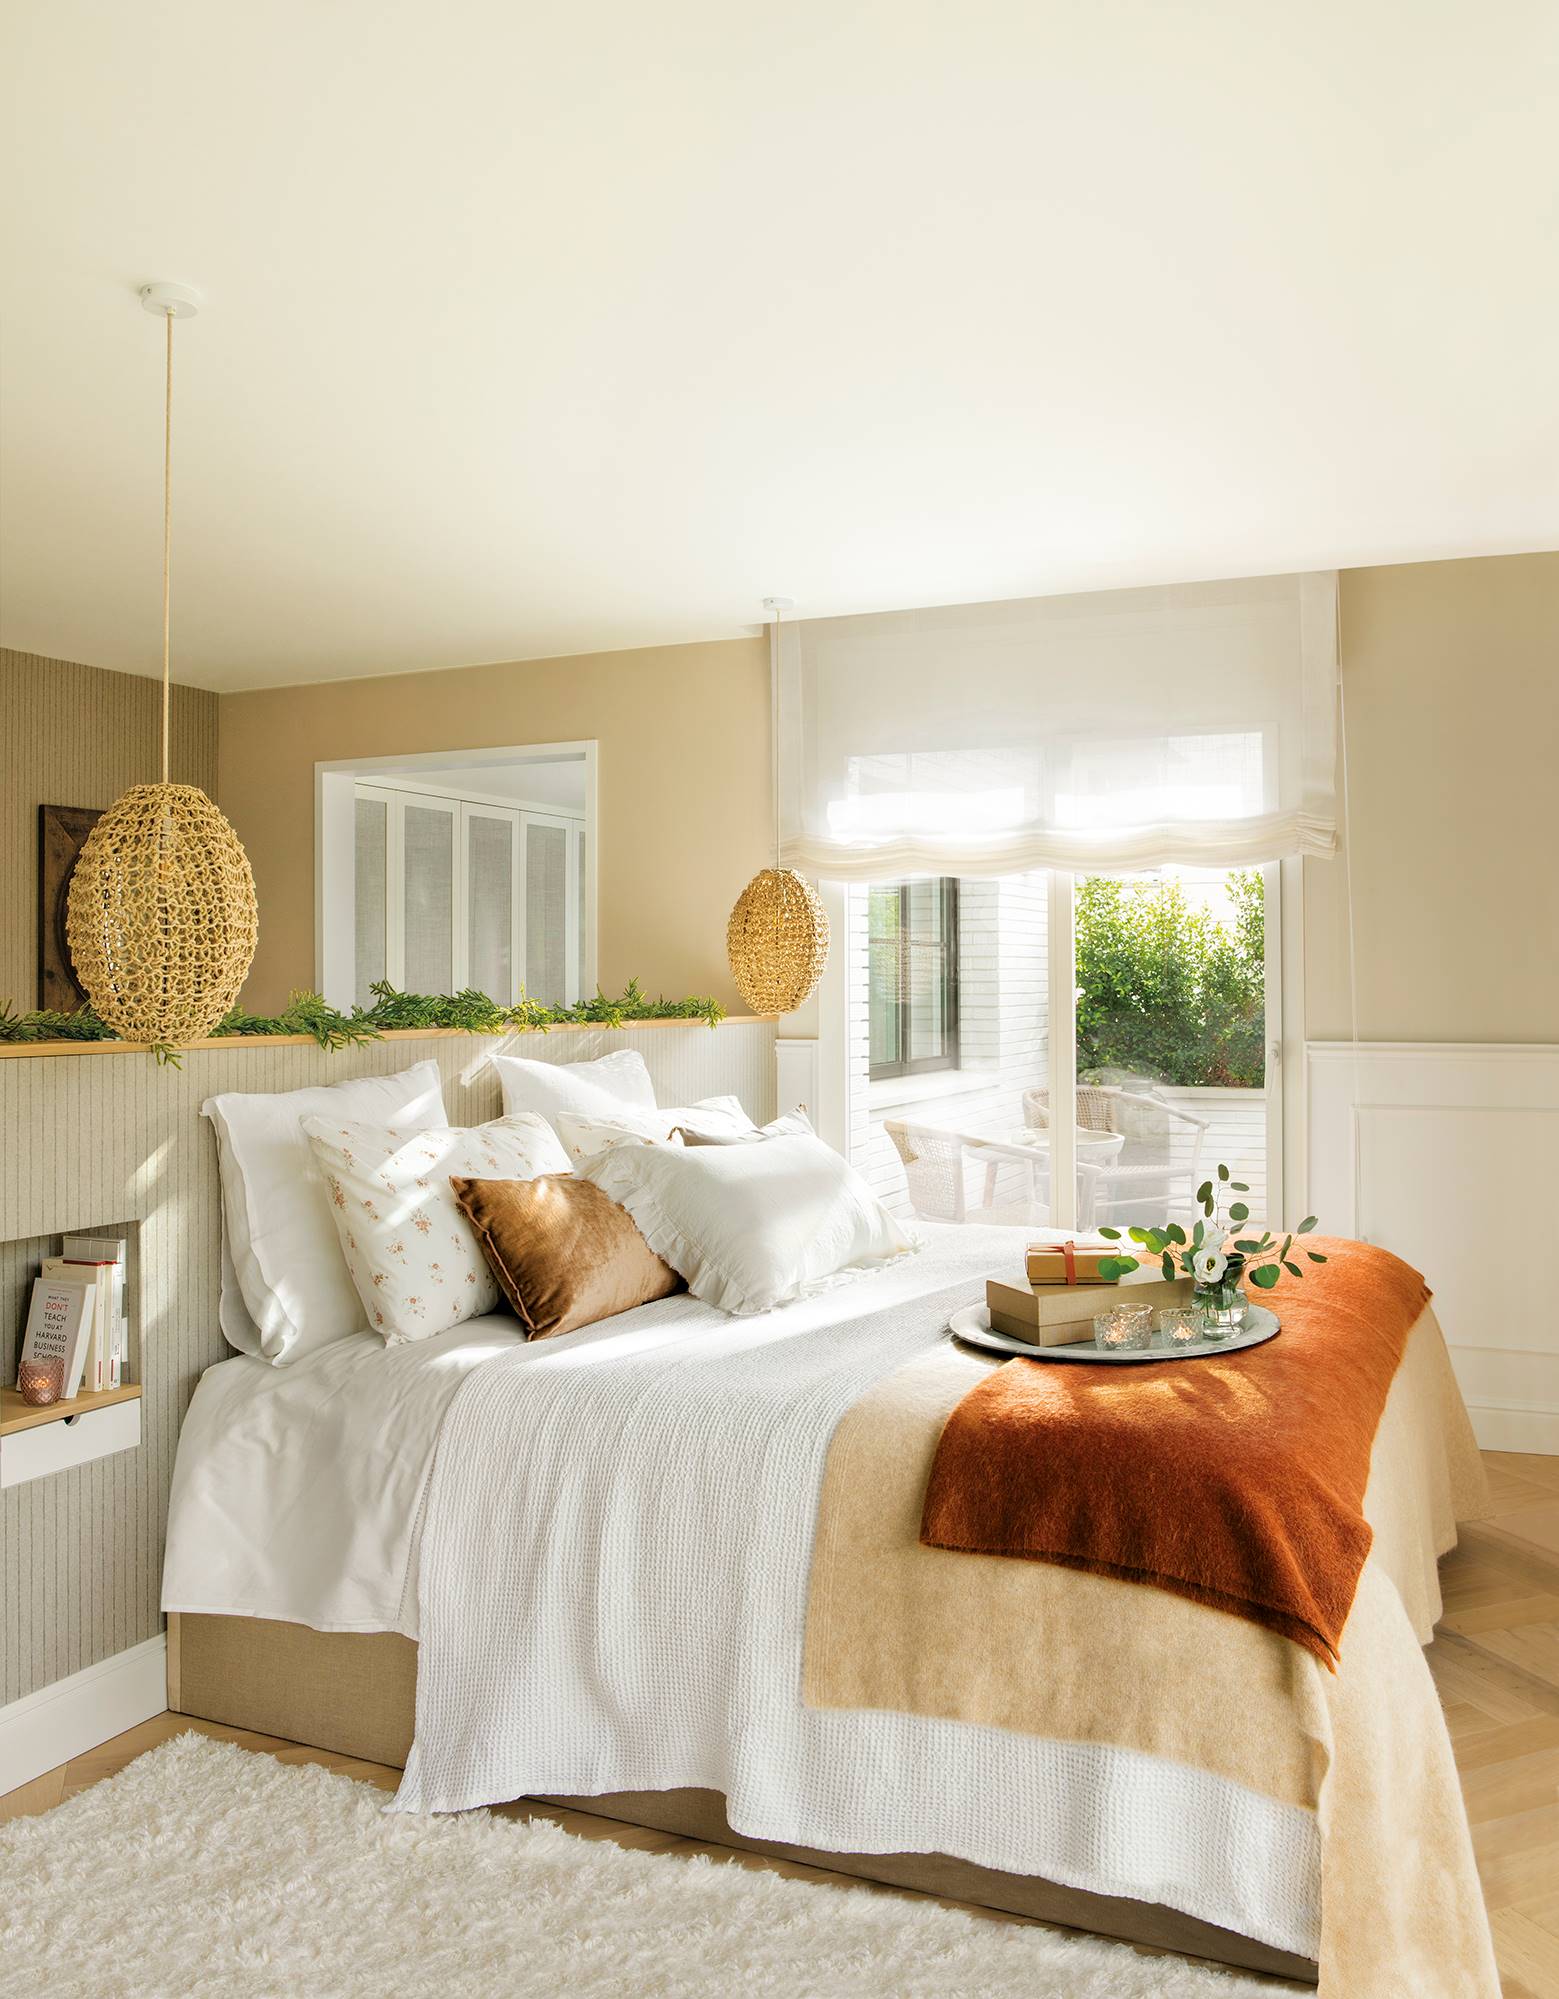 Dormitorio con papel pintado en el cabecero, molduras en las paredes, cabecero exento y lámparas de fibras. 